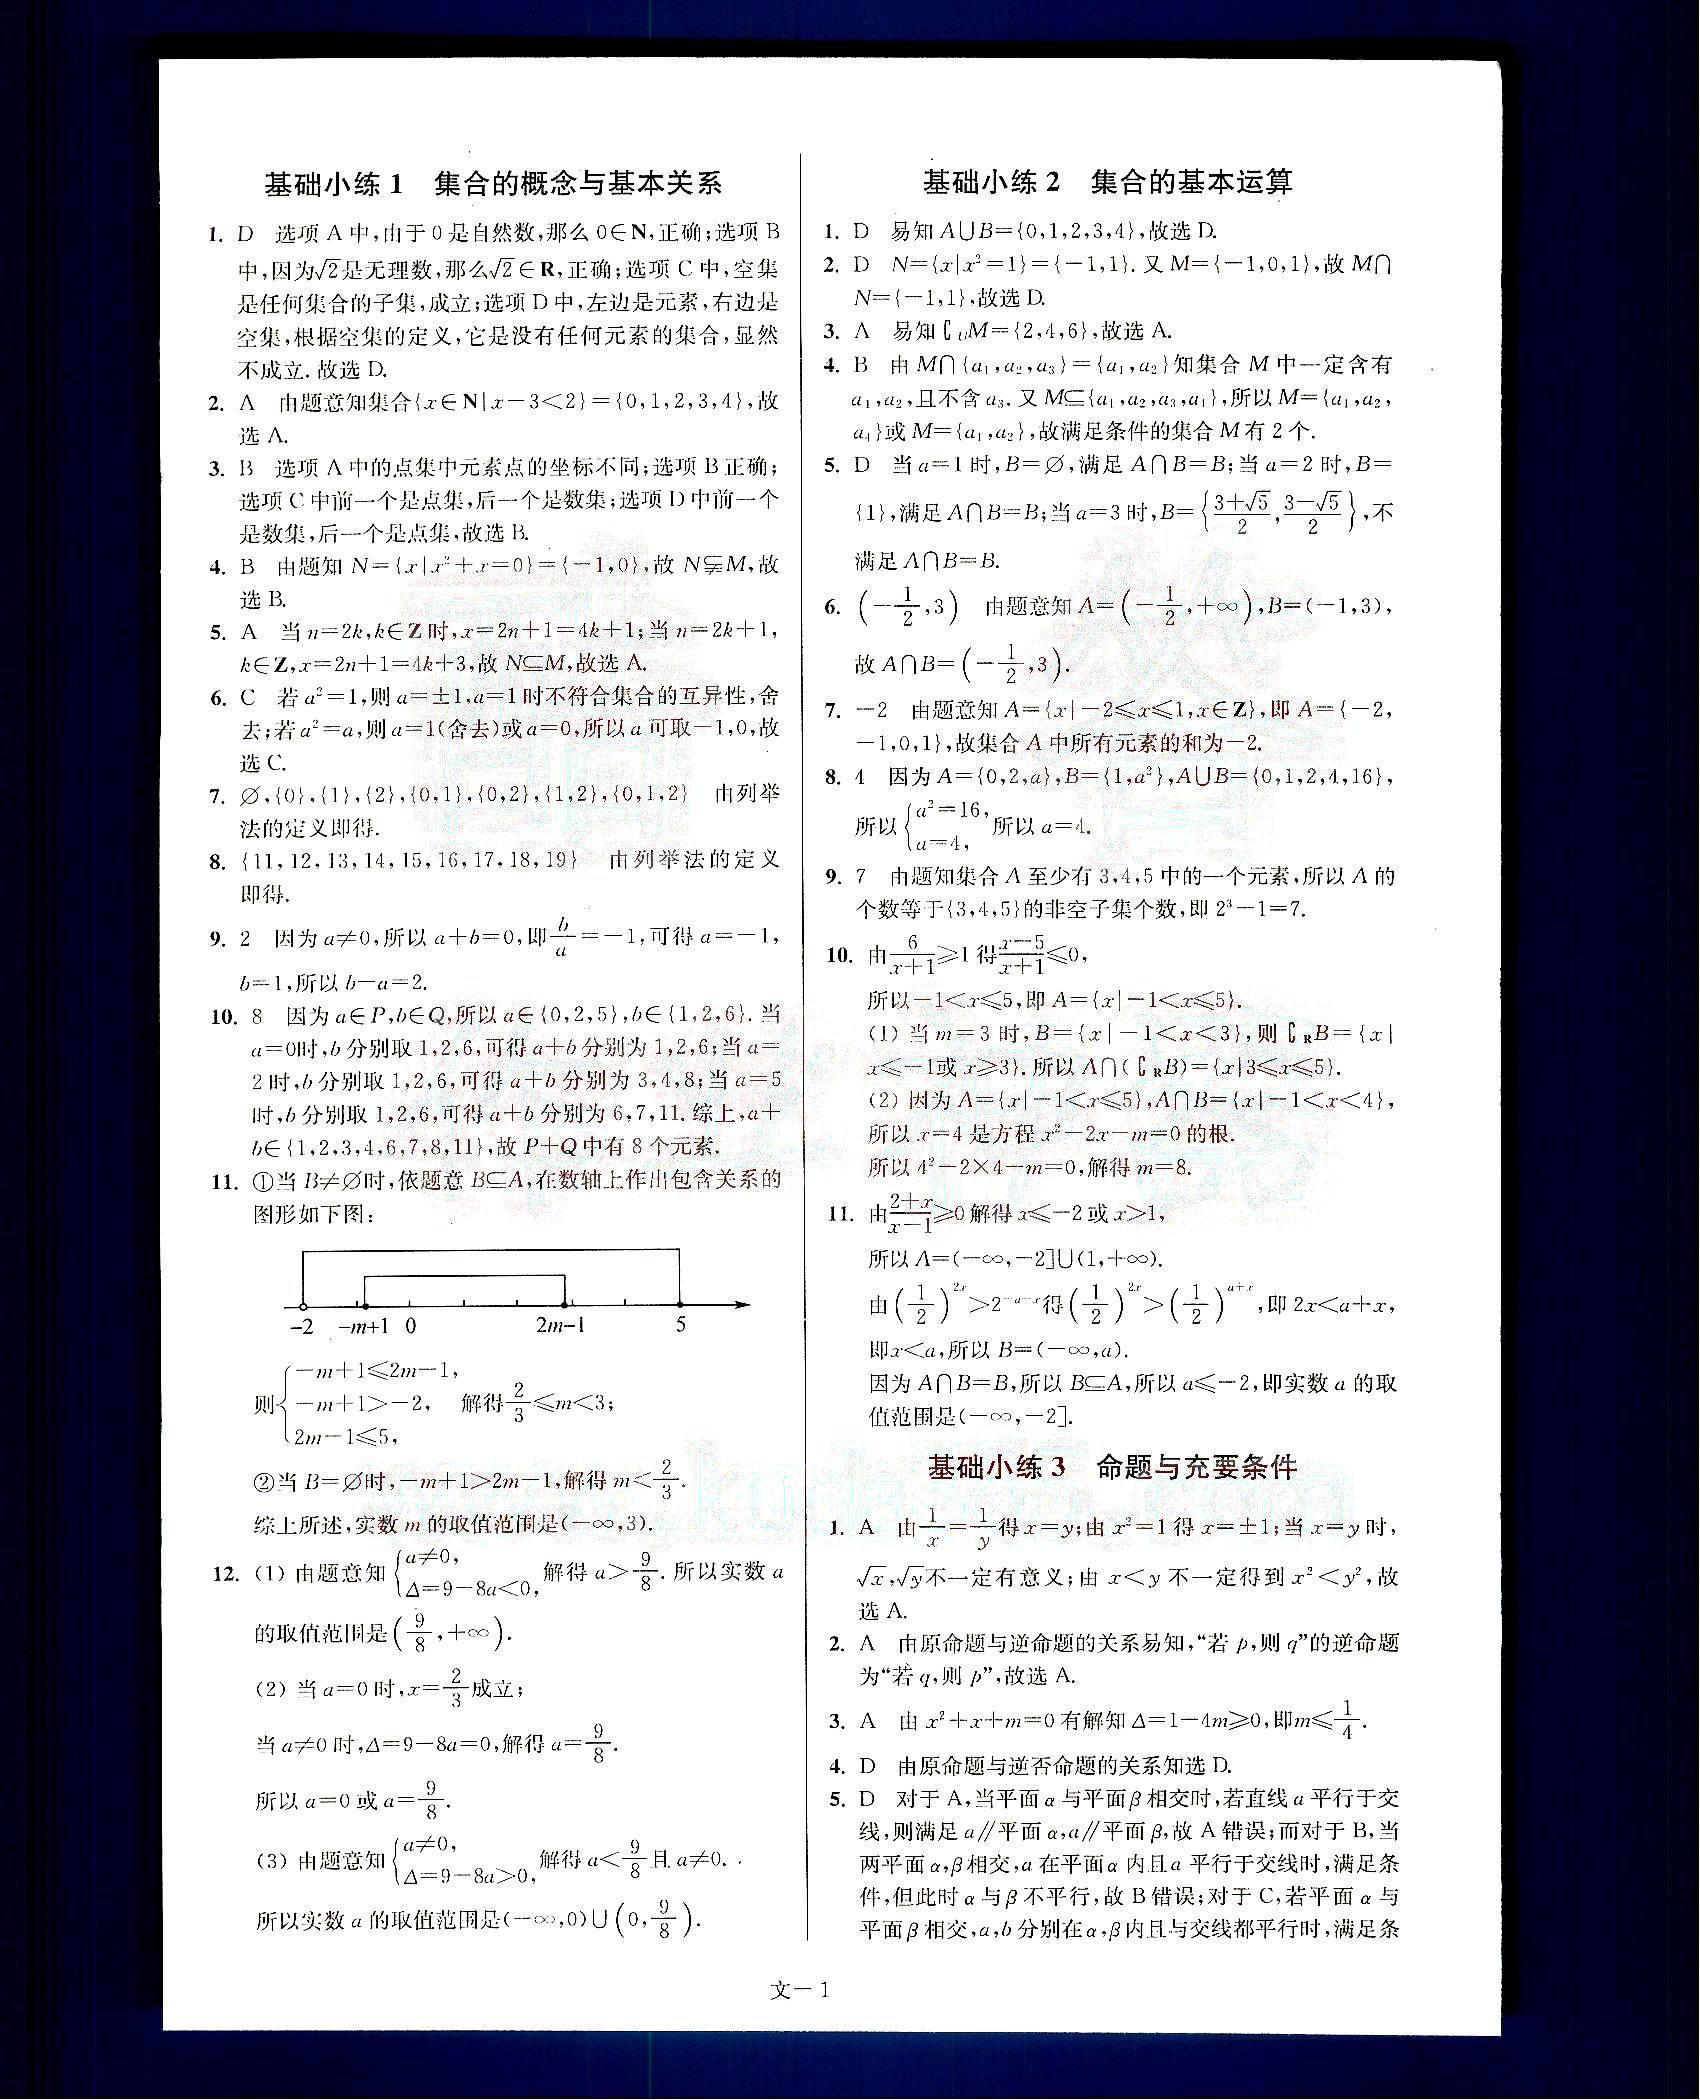 小题狂做-高考数学-文科-最基础篇南京大学出版社 第1部分 [1]